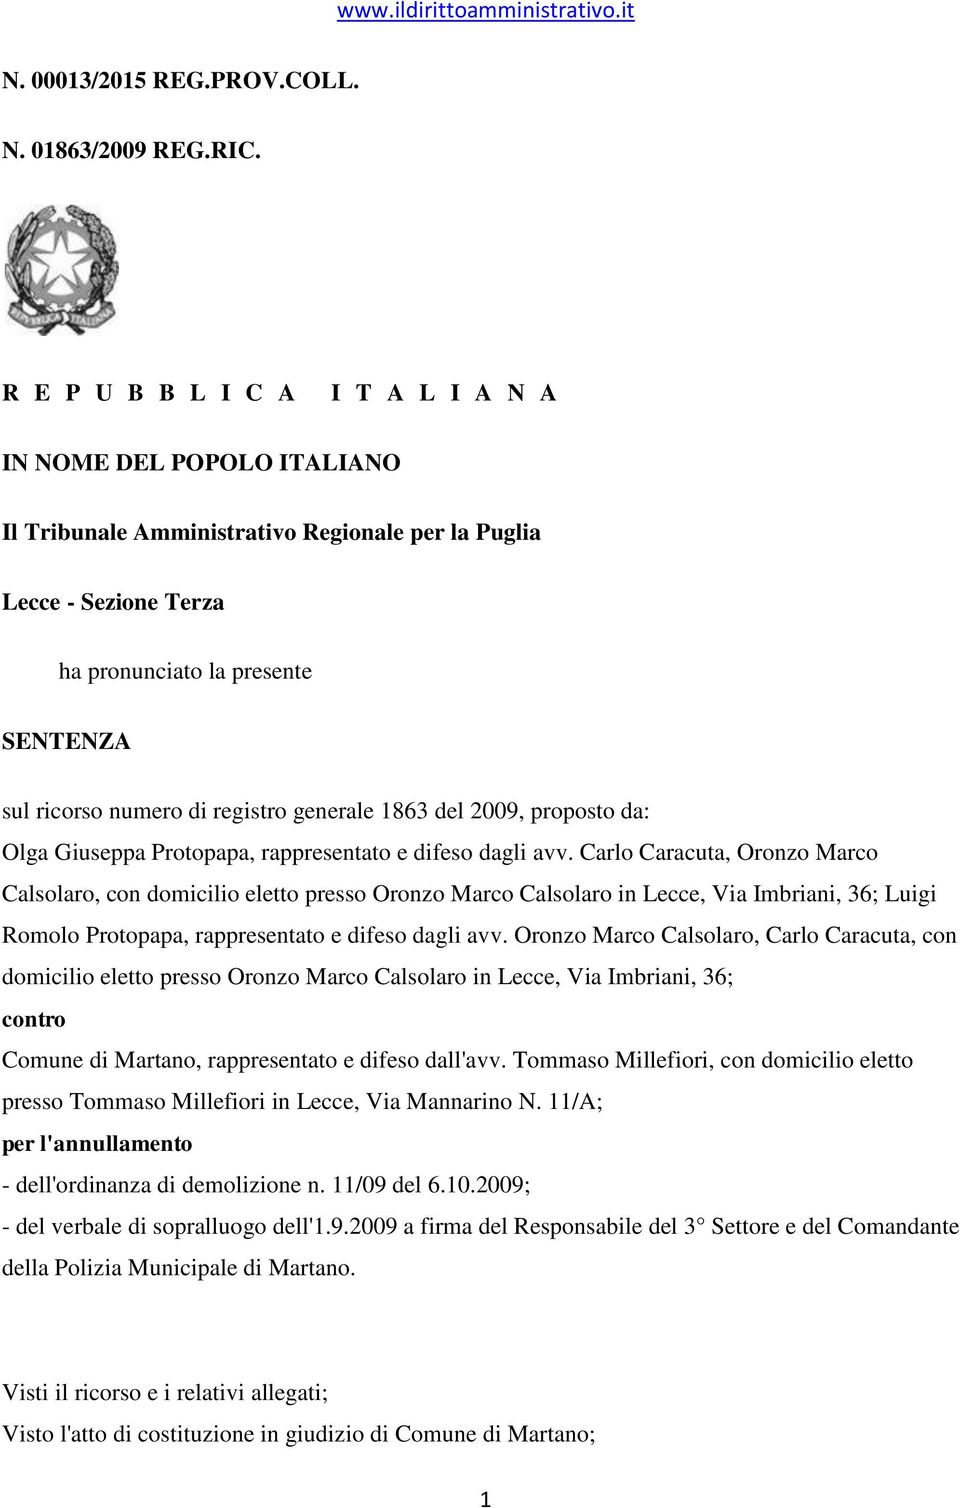 registro generale 1863 del 2009, proposto da: Olga Giuseppa Protopapa, rappresentato e difeso dagli avv.